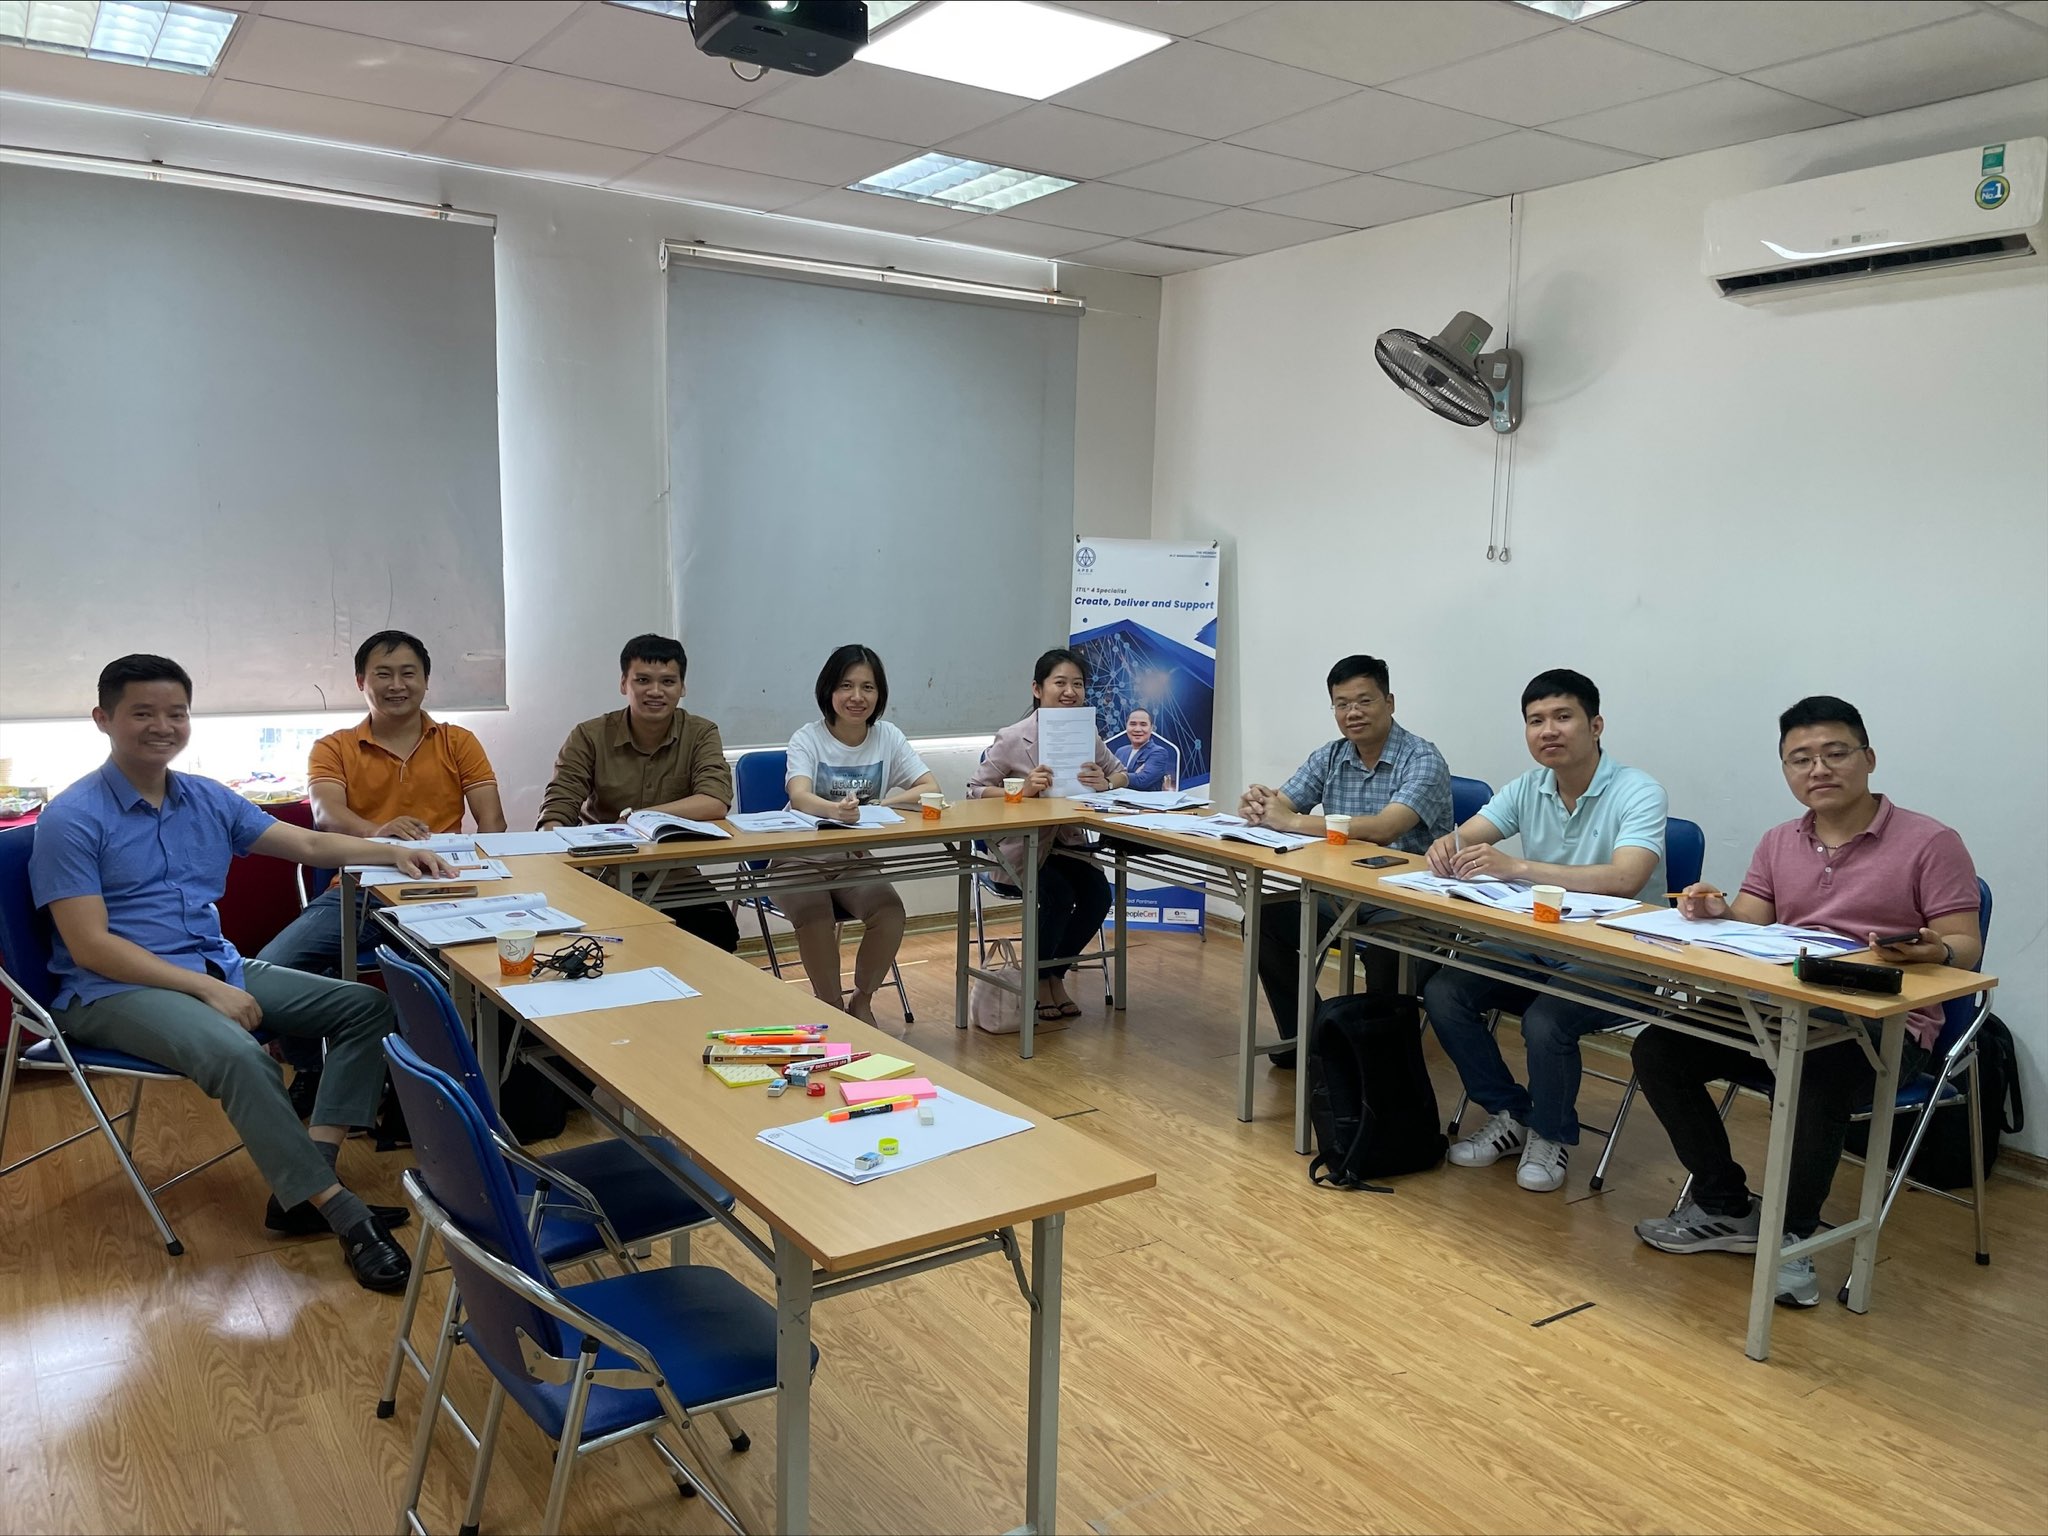 Khai giảng khóa học ITIL 4 Intermediate Create, Deliver and Support tại Hà Nội năm 2022